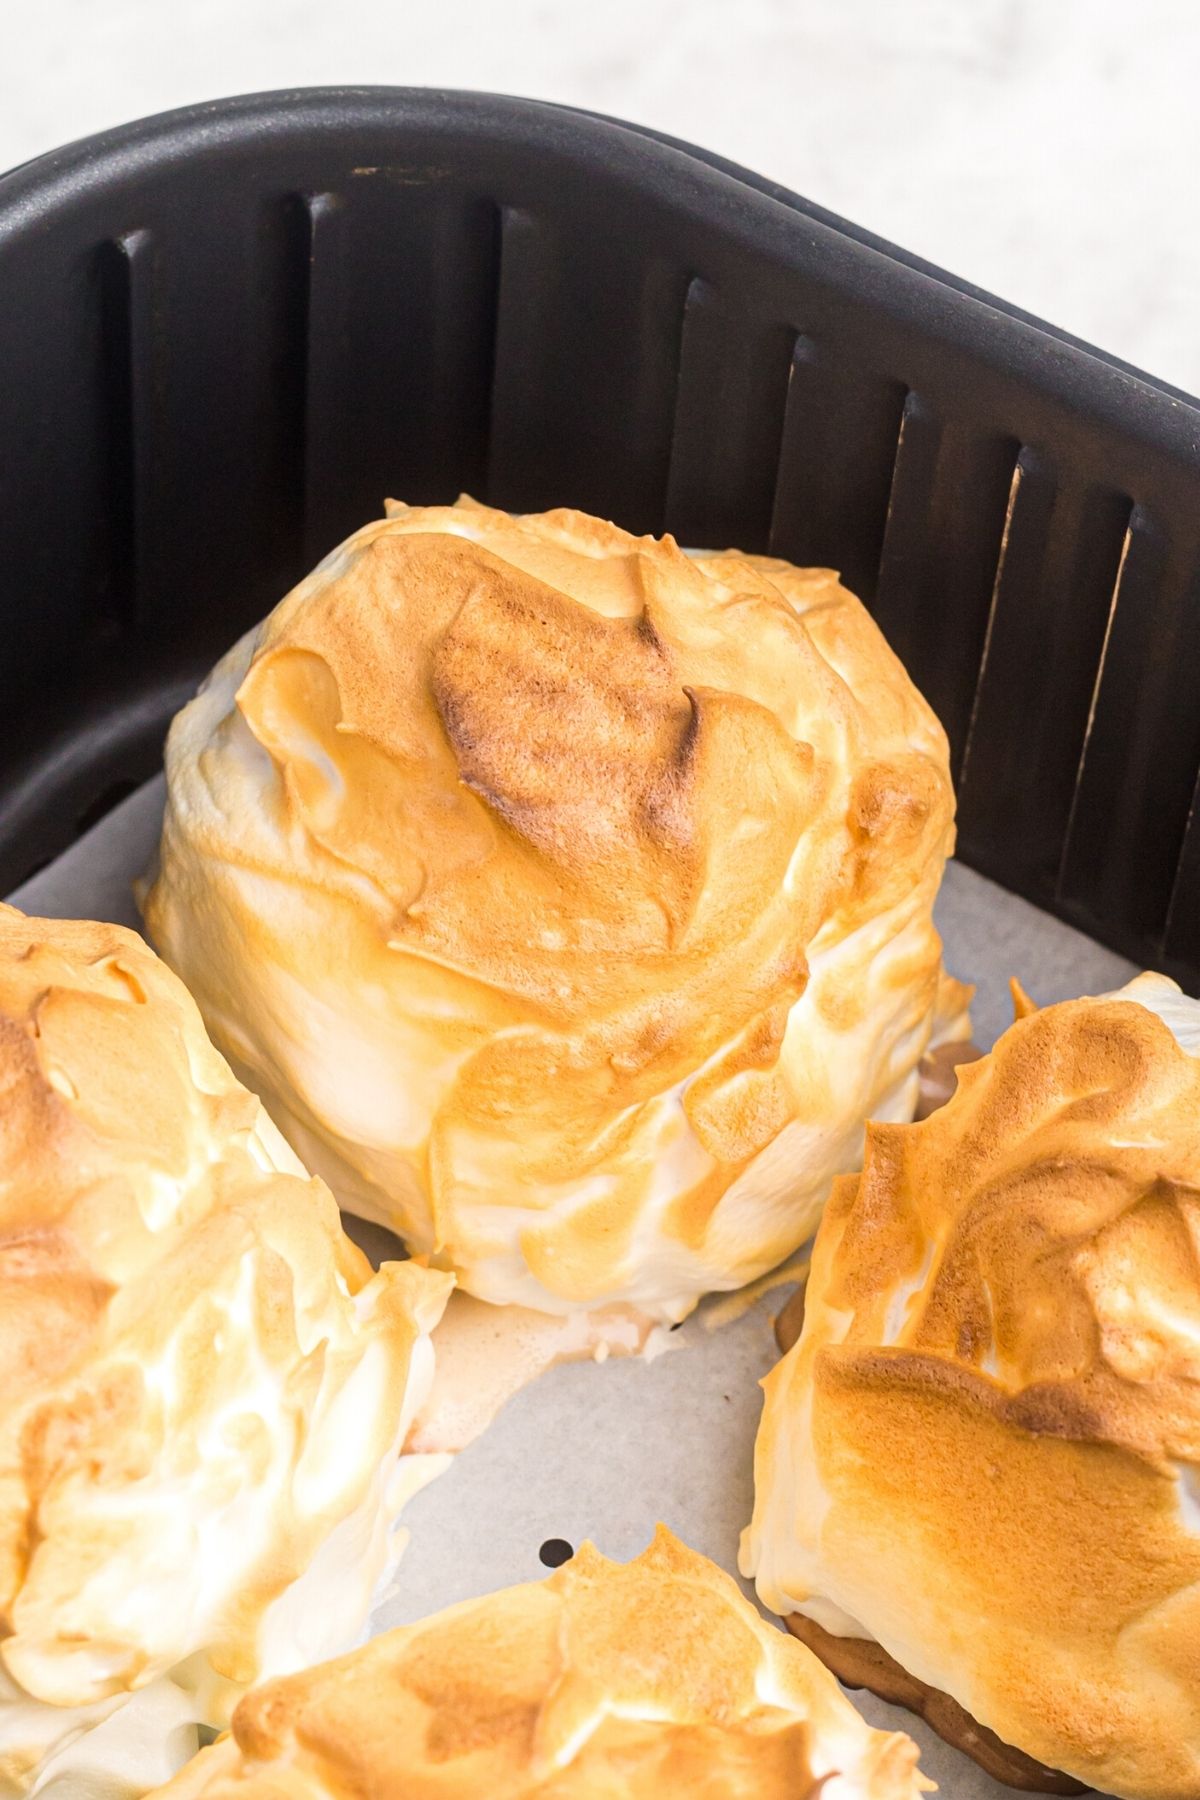 Golden crispy meringue covered brownies in the air fryer basket